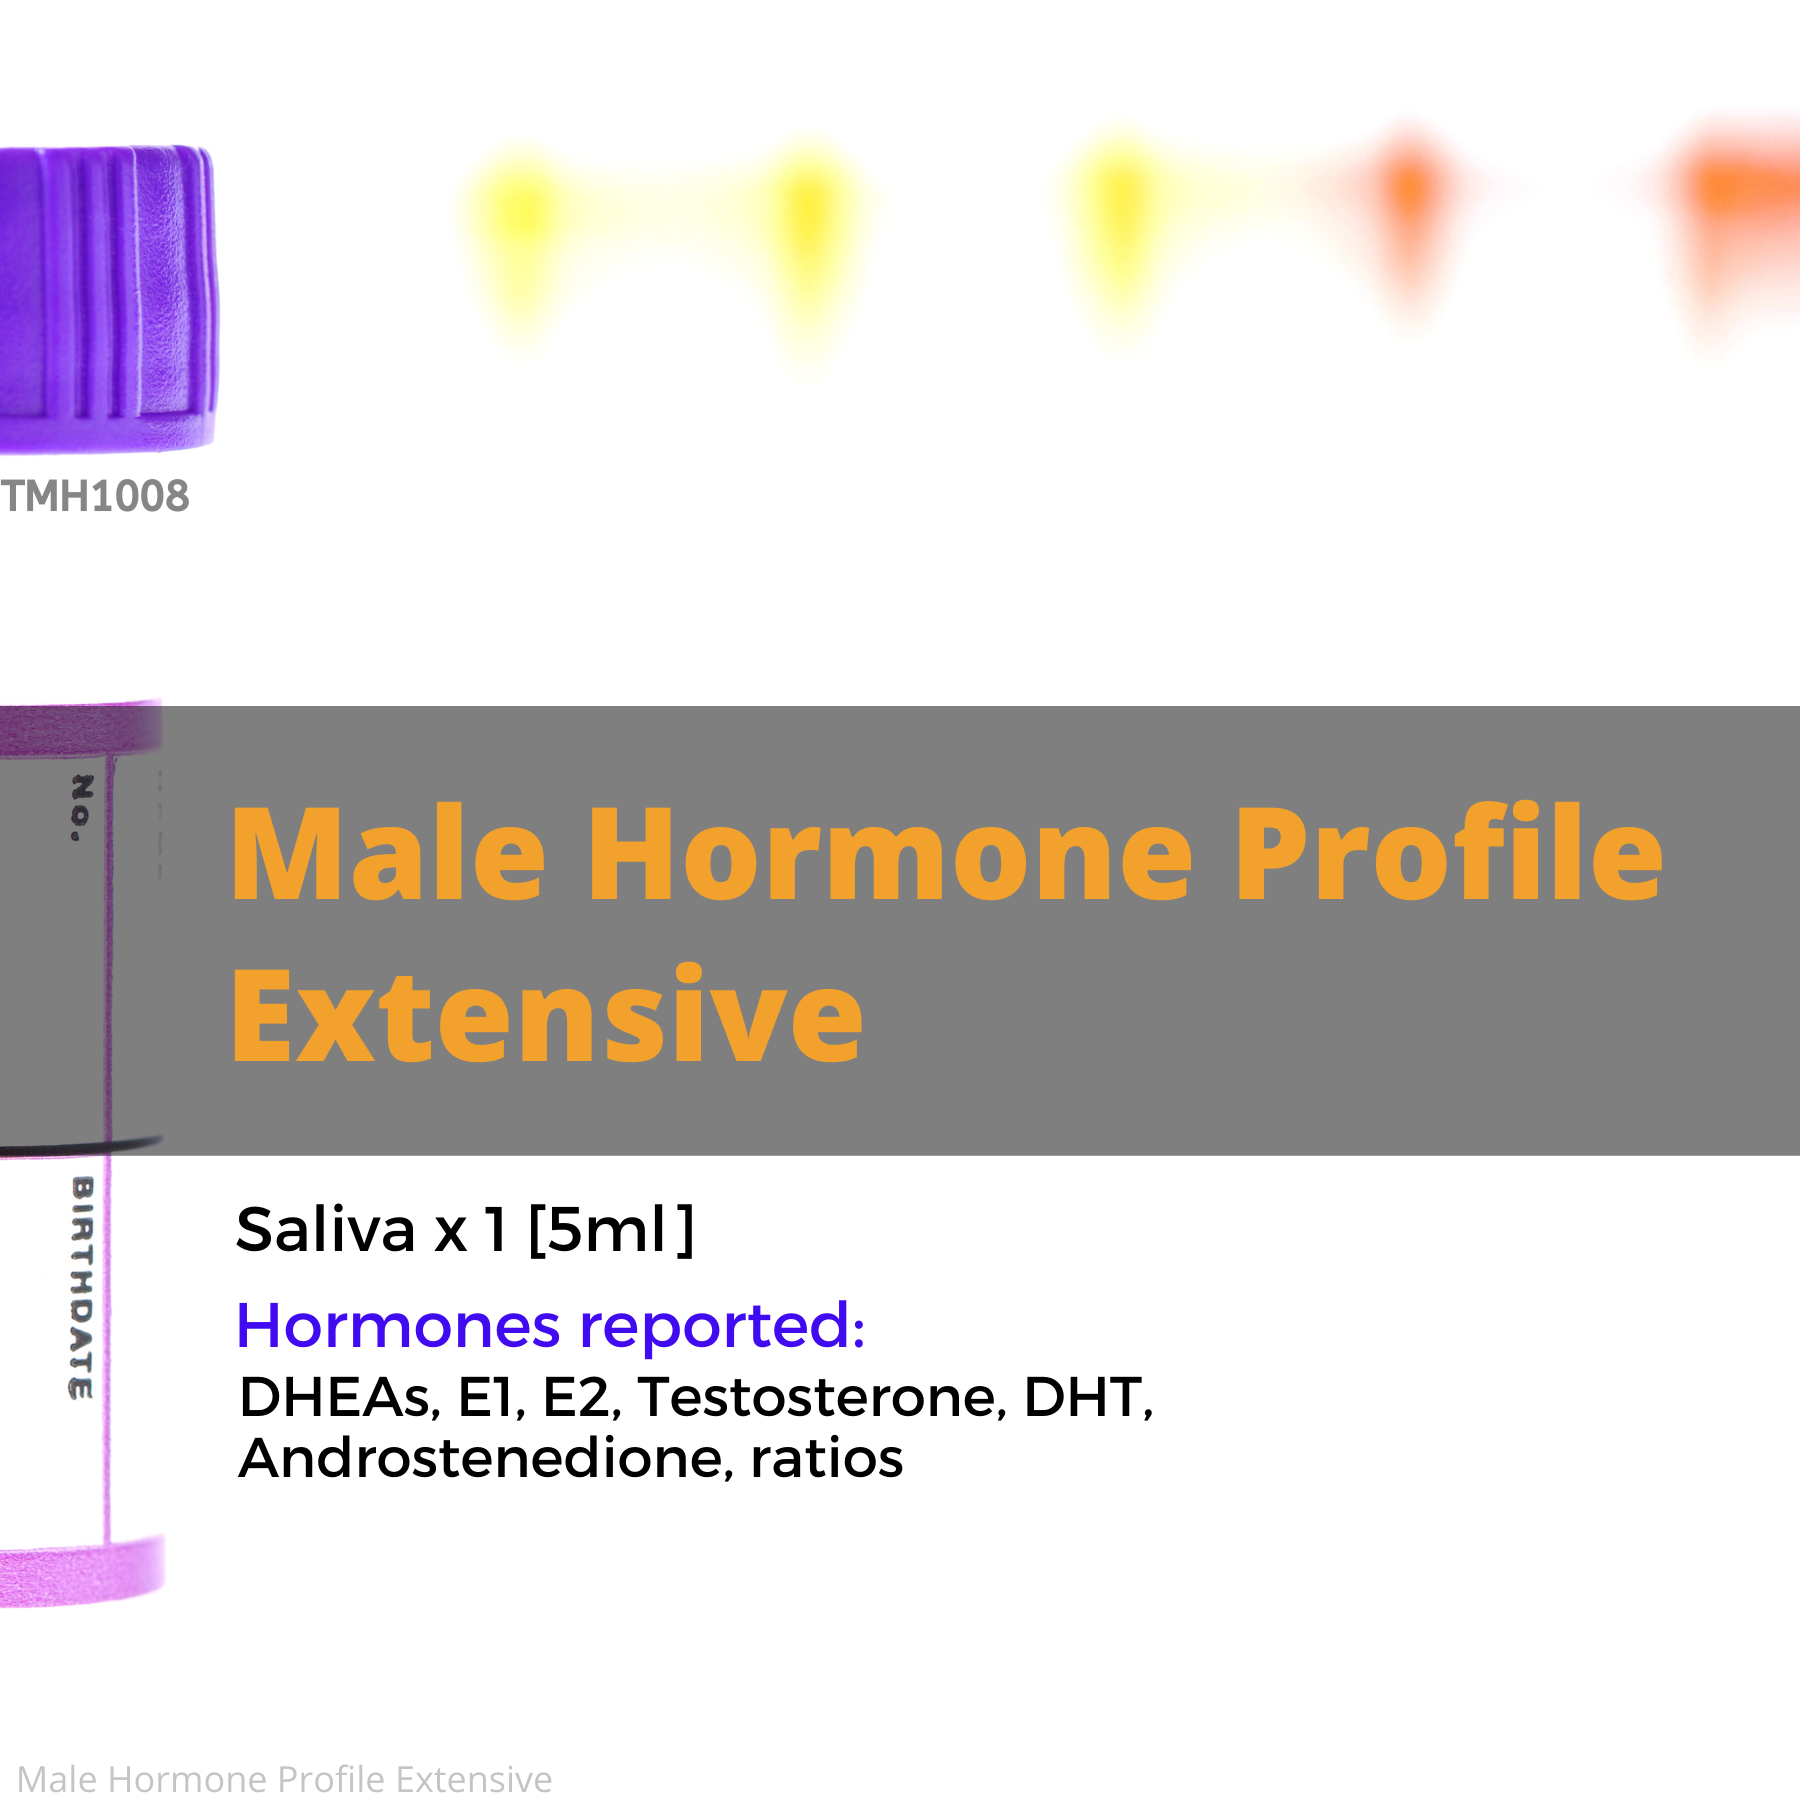 Male Hormone Profile Extensive